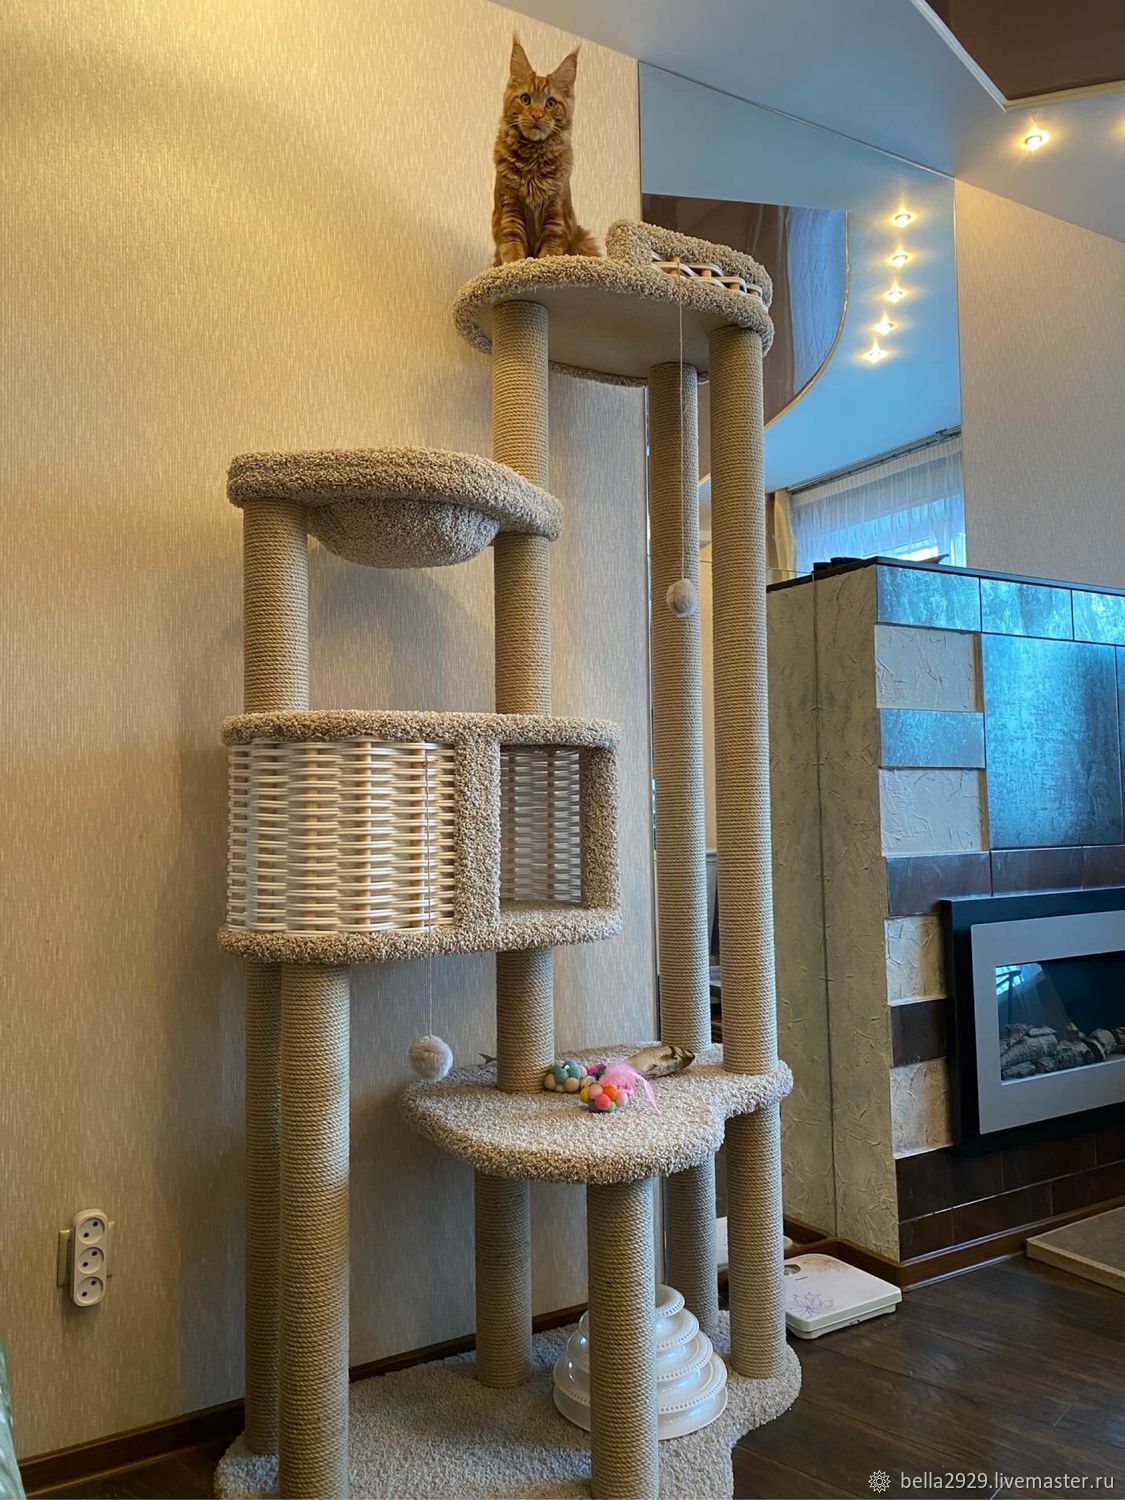 Домик для кошки, когтеточка, игровой комплекс для кошек Прятки